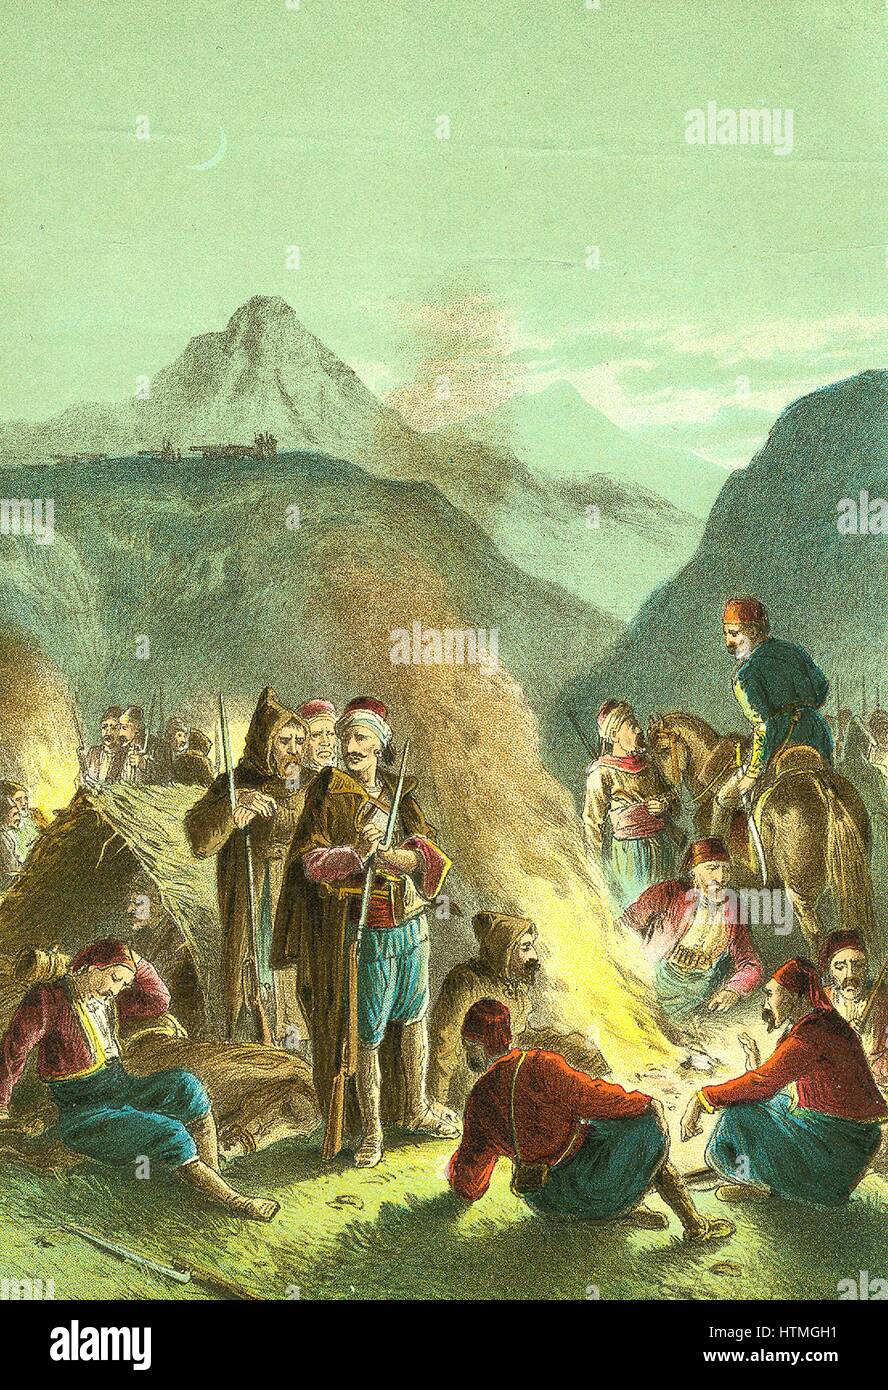 Guerra Russo-Turkish Turkihs 1877-1878: las fuerzas bajo el mando de Sulieman Pasha deteniéndose otras en el Shipka Pass, de agosto de 1877, durante el fallido intento de capturar Tgurish el pase de los rusos. Sulieman perdió 10.000 hombres, alrededor de la cuarta parte de su ejército. Chromolithograph Foto de stock